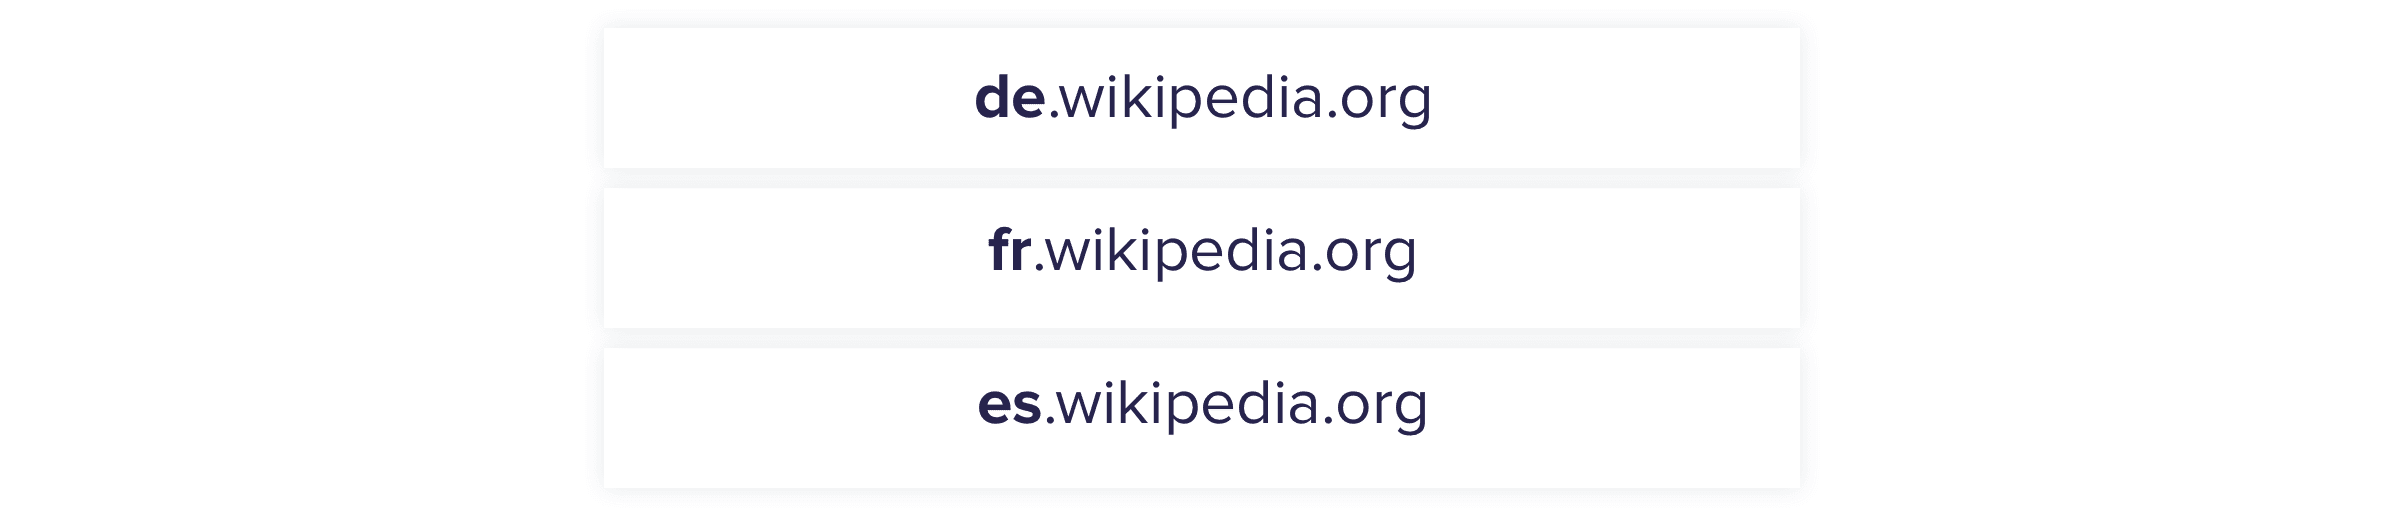 نطاقات ويكيبيديا الفرعية للمناطق